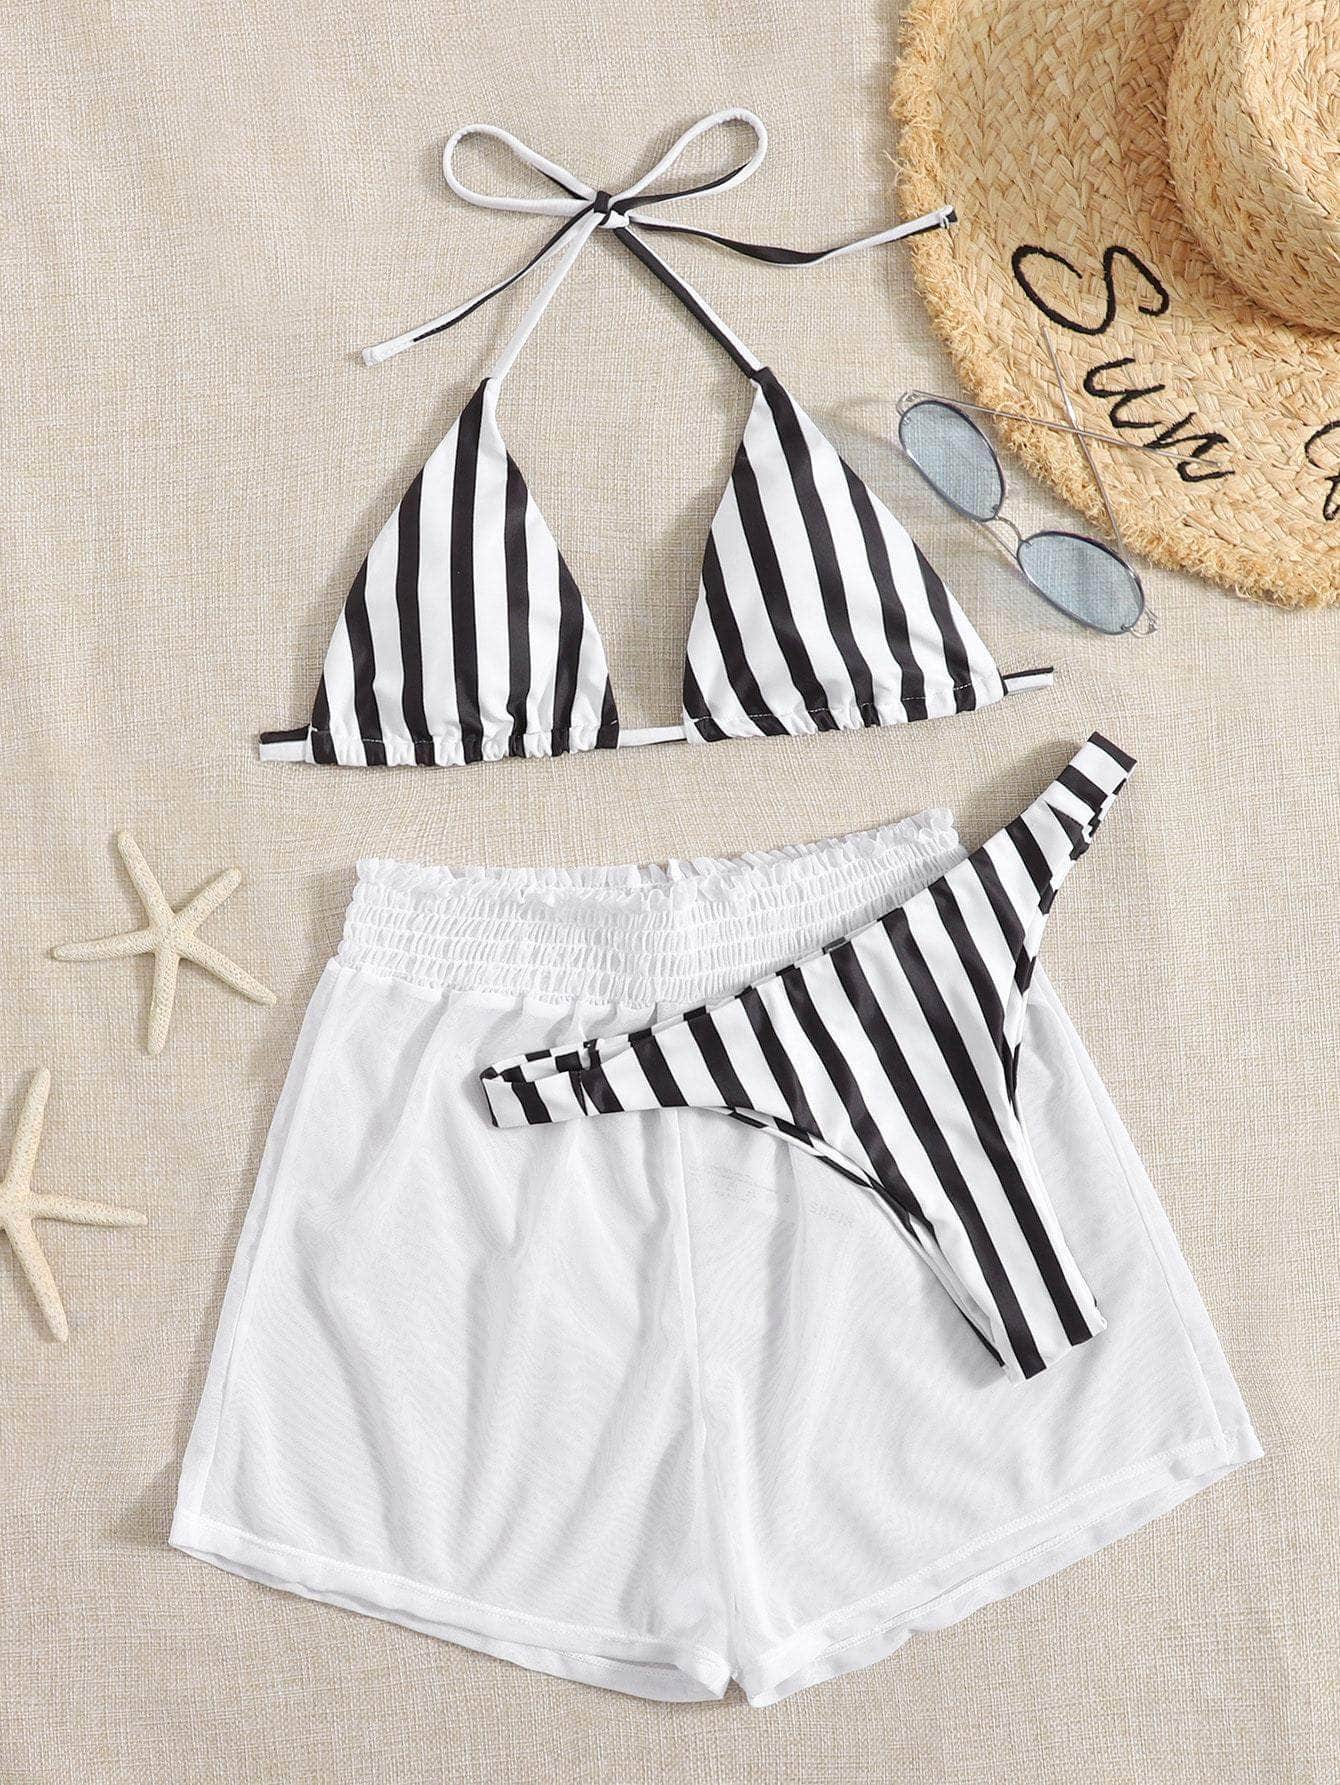 Blanco y Negro / XS Vestido de baño bikini triángulo de rayas con shorts con malla